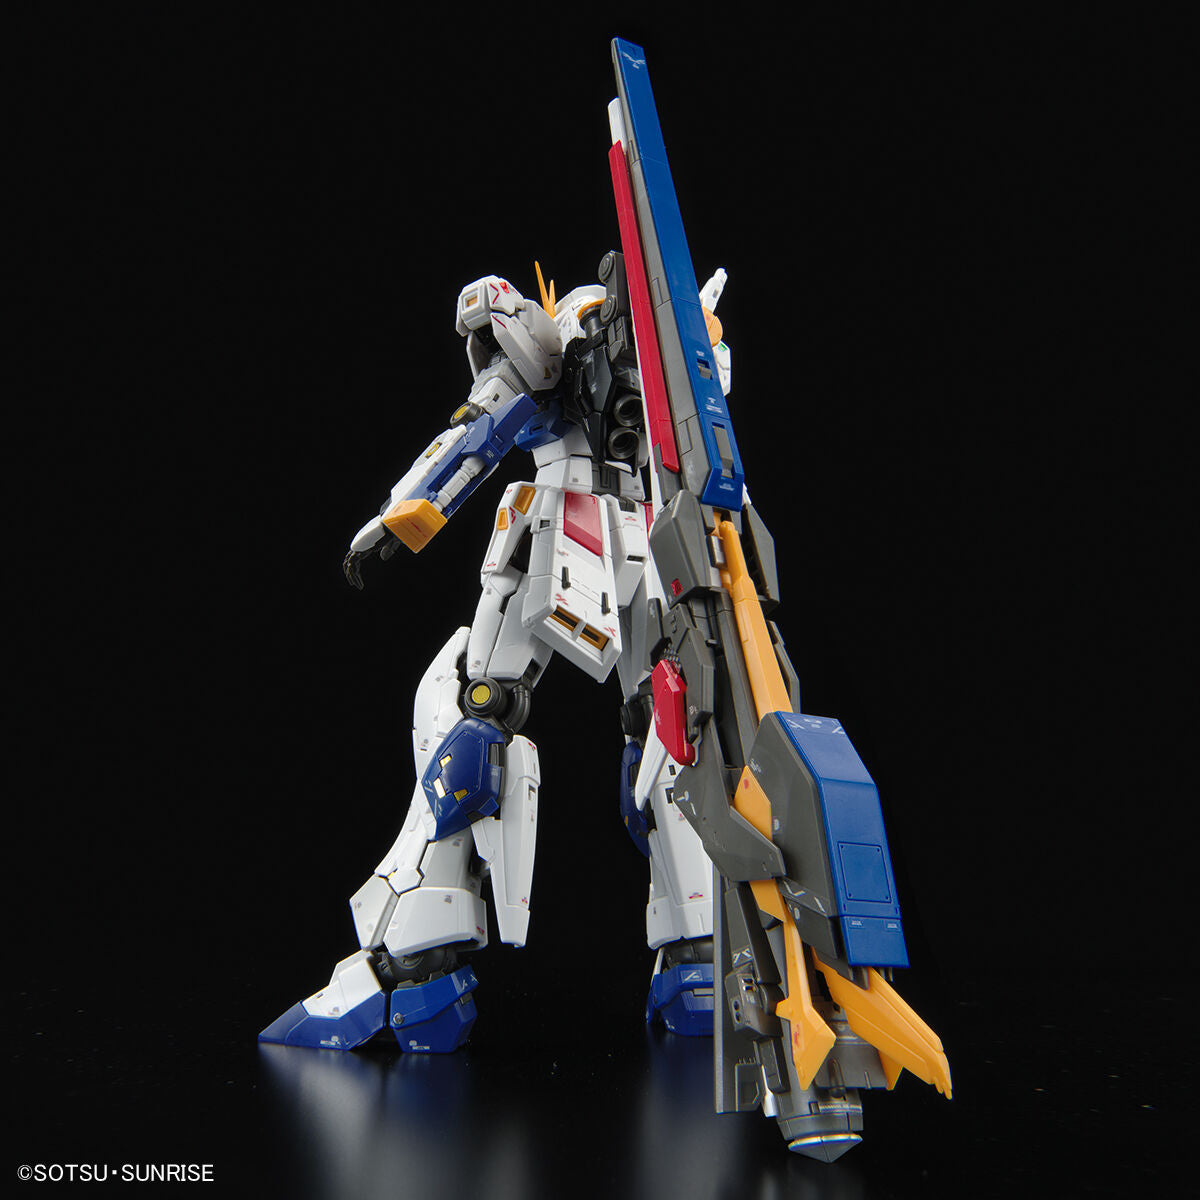 RG 1/144 Gundam Base Limited (Side-F) RX-93ff Nu Gundam *PRE-ORDER*